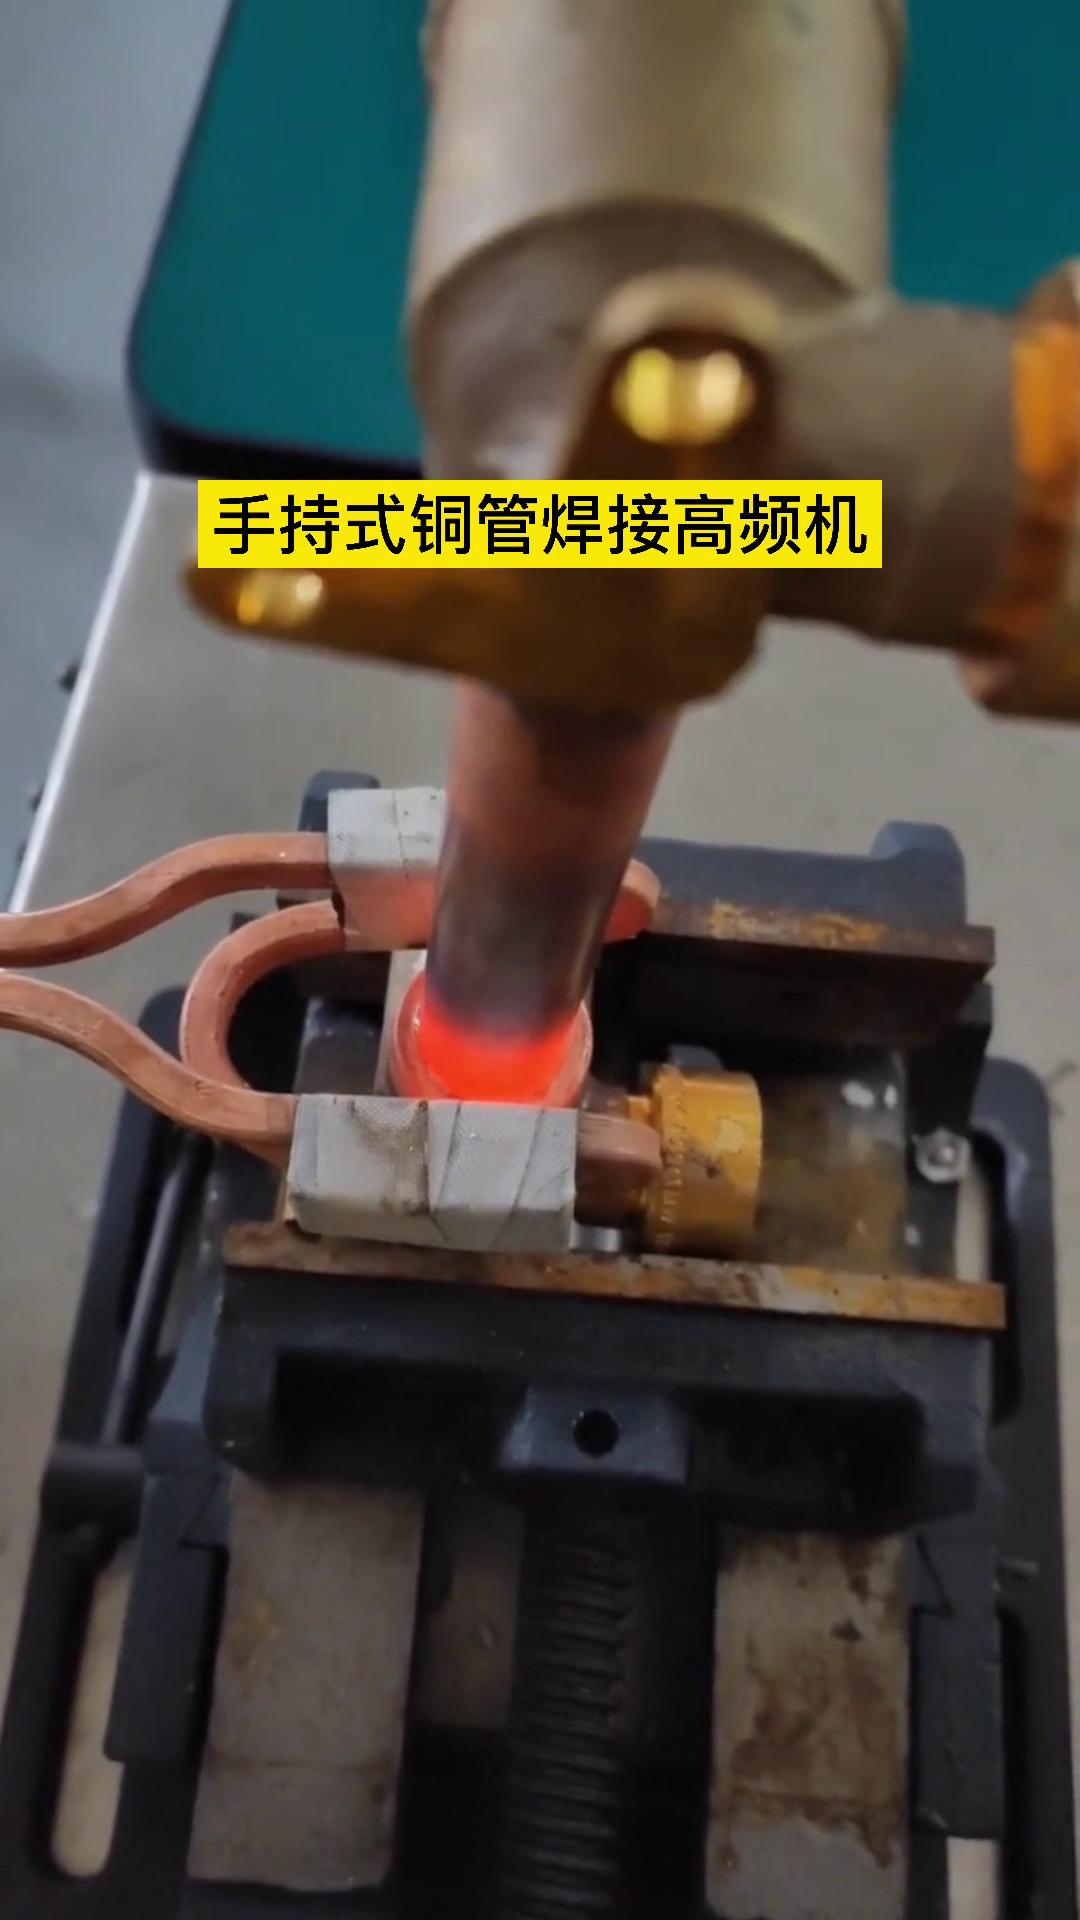 焊接铜管 我们的高频机器还是可以的 这是客户亲自操作试样试机焊接